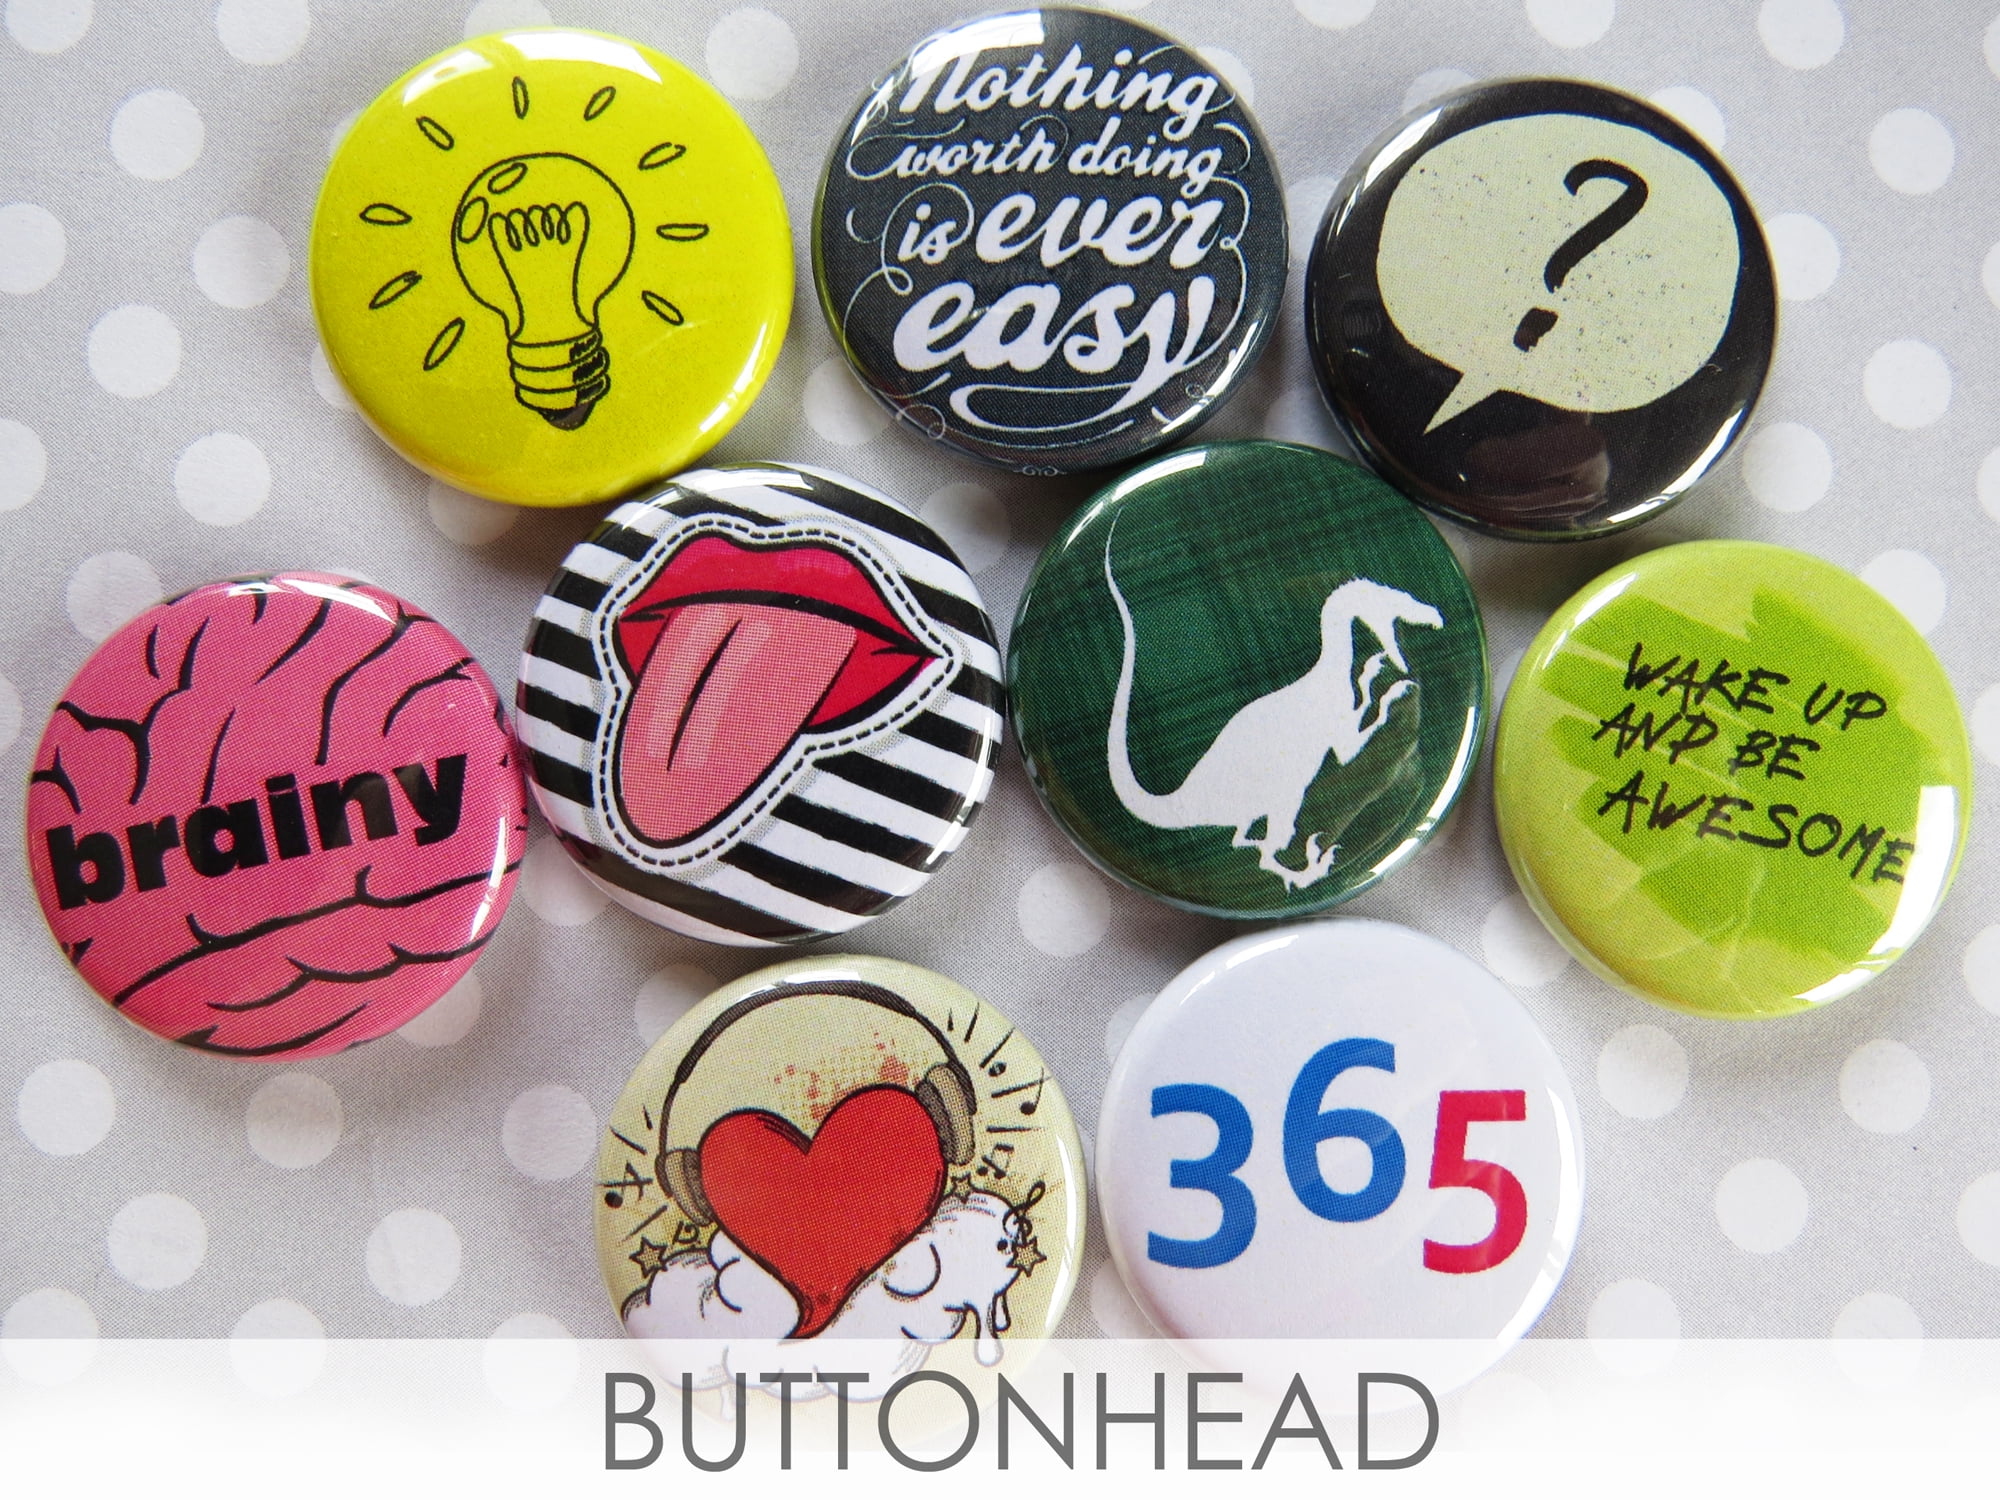 Standard Pin-Back Buttons – Custom Pins Buttons Badges - Wacky Buttons